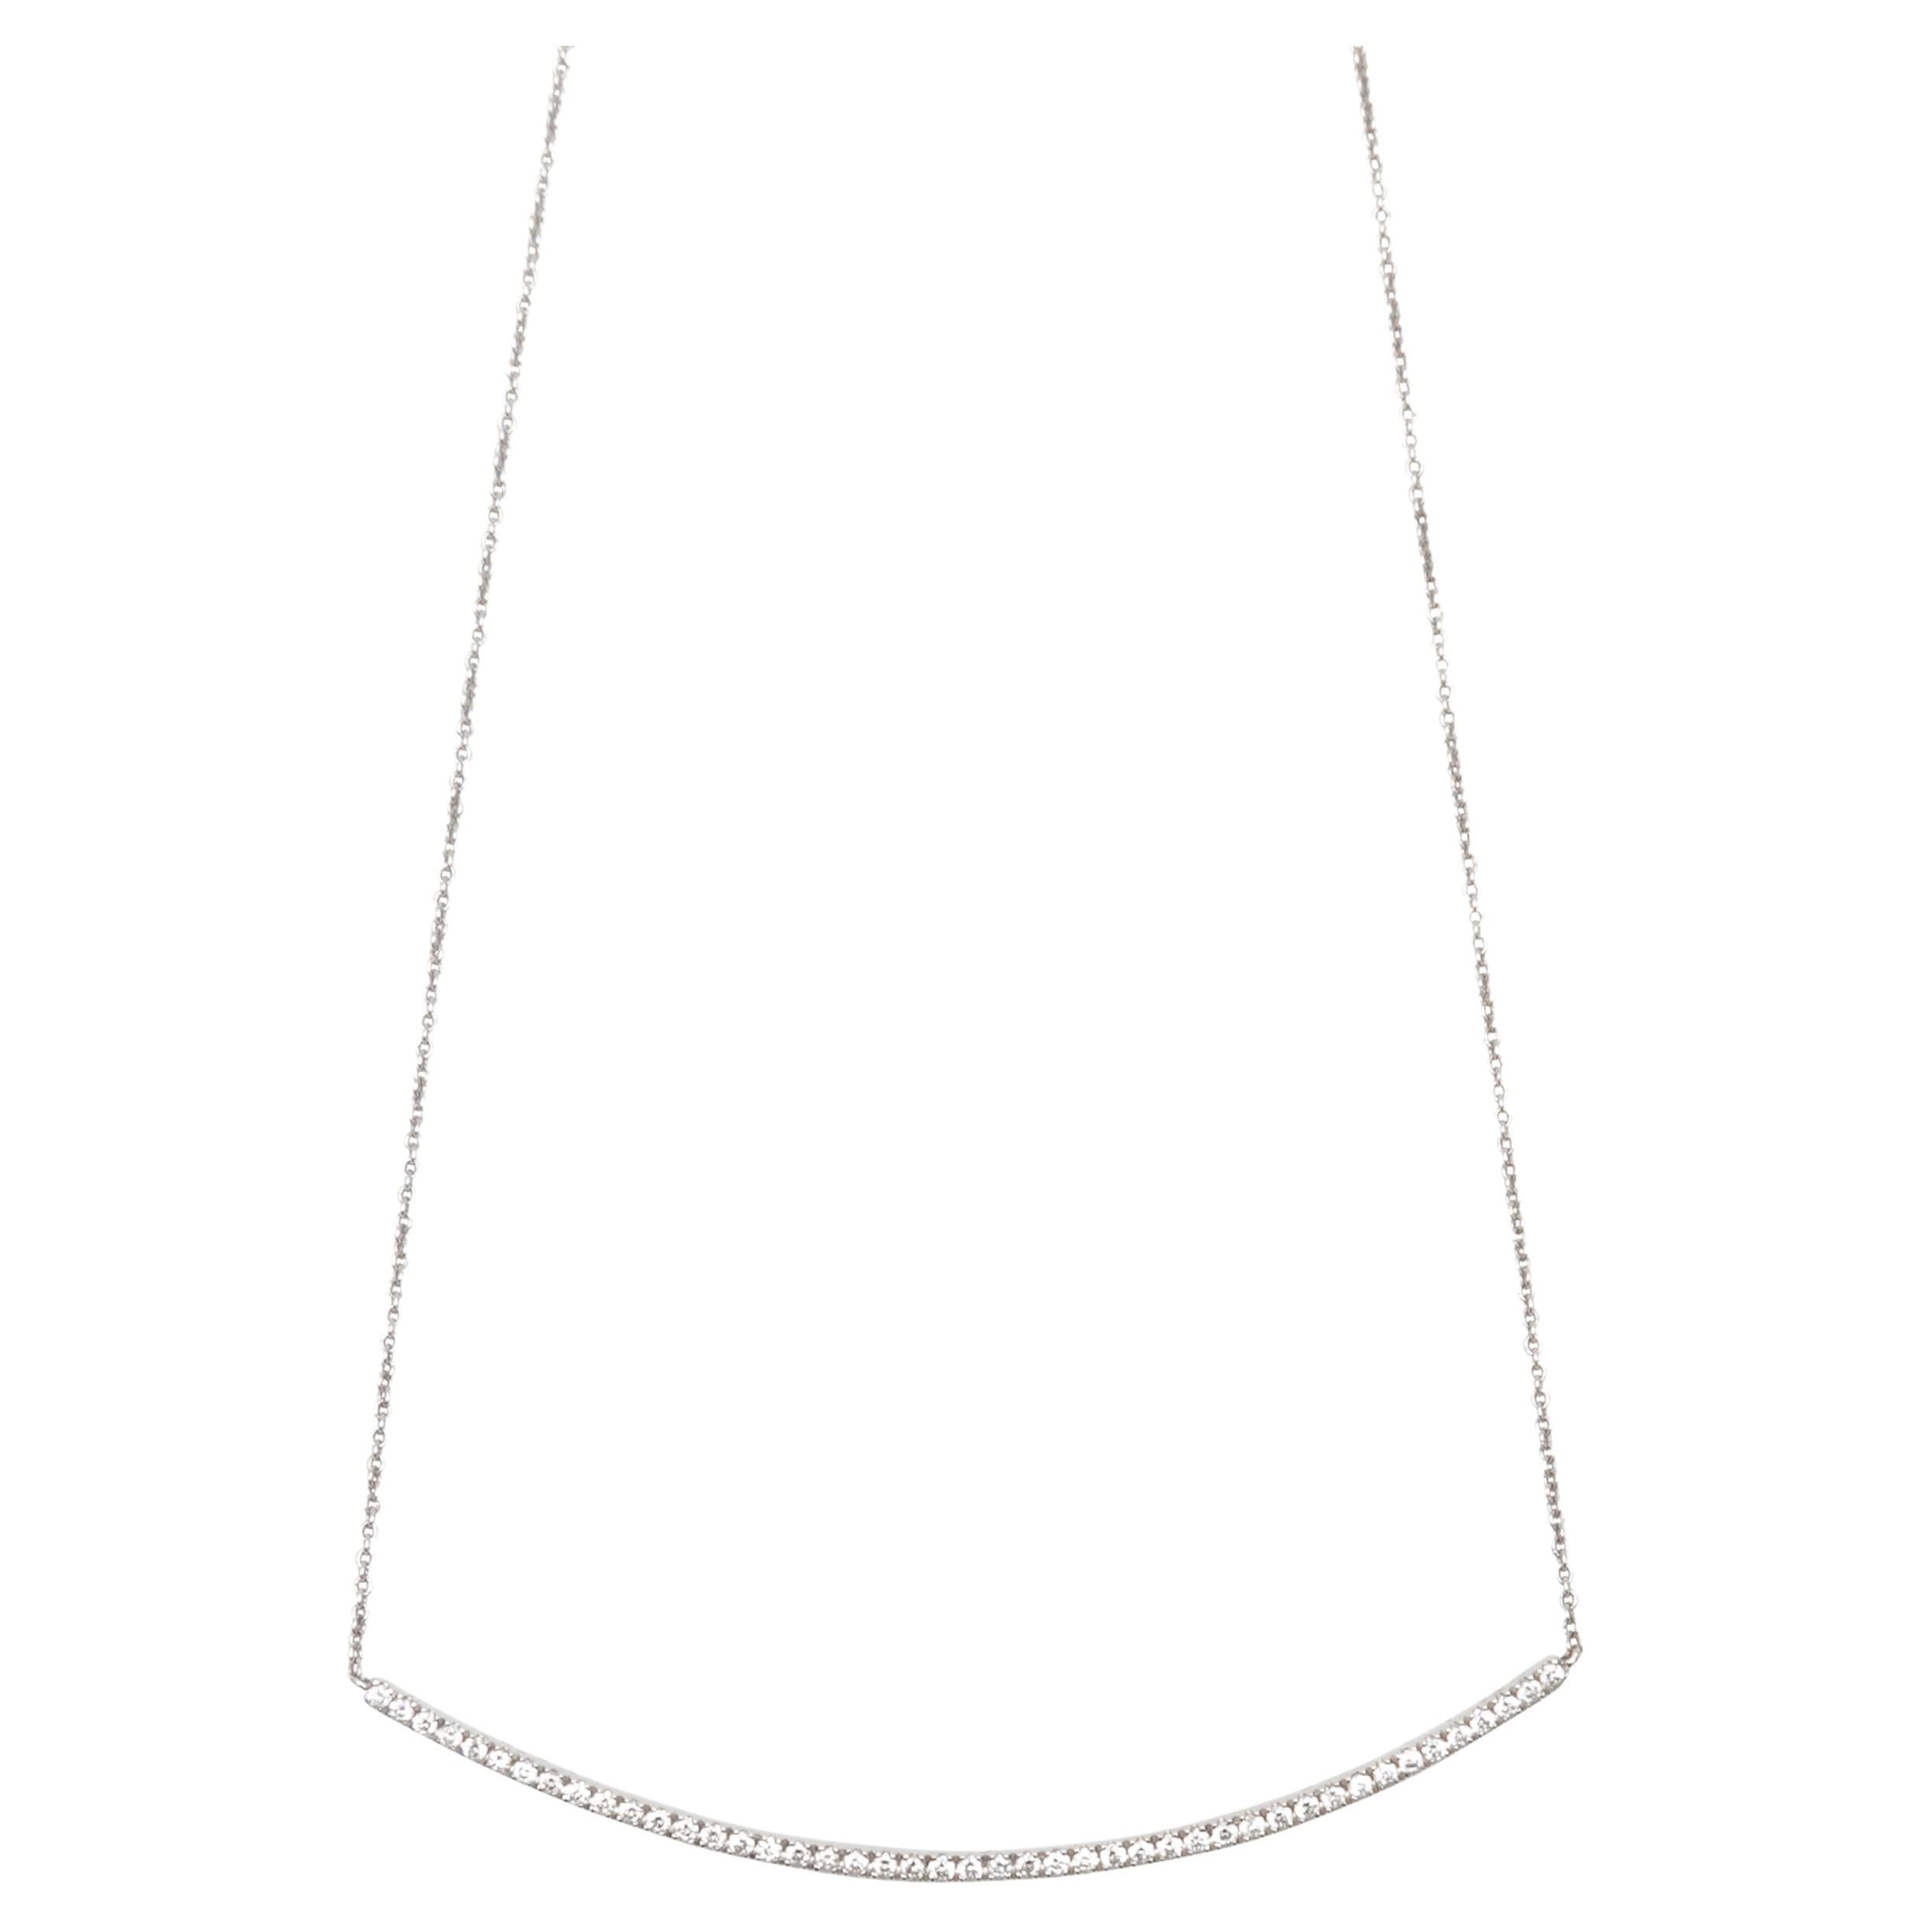 14K White Gold & Pave Diamond Bar Necklace